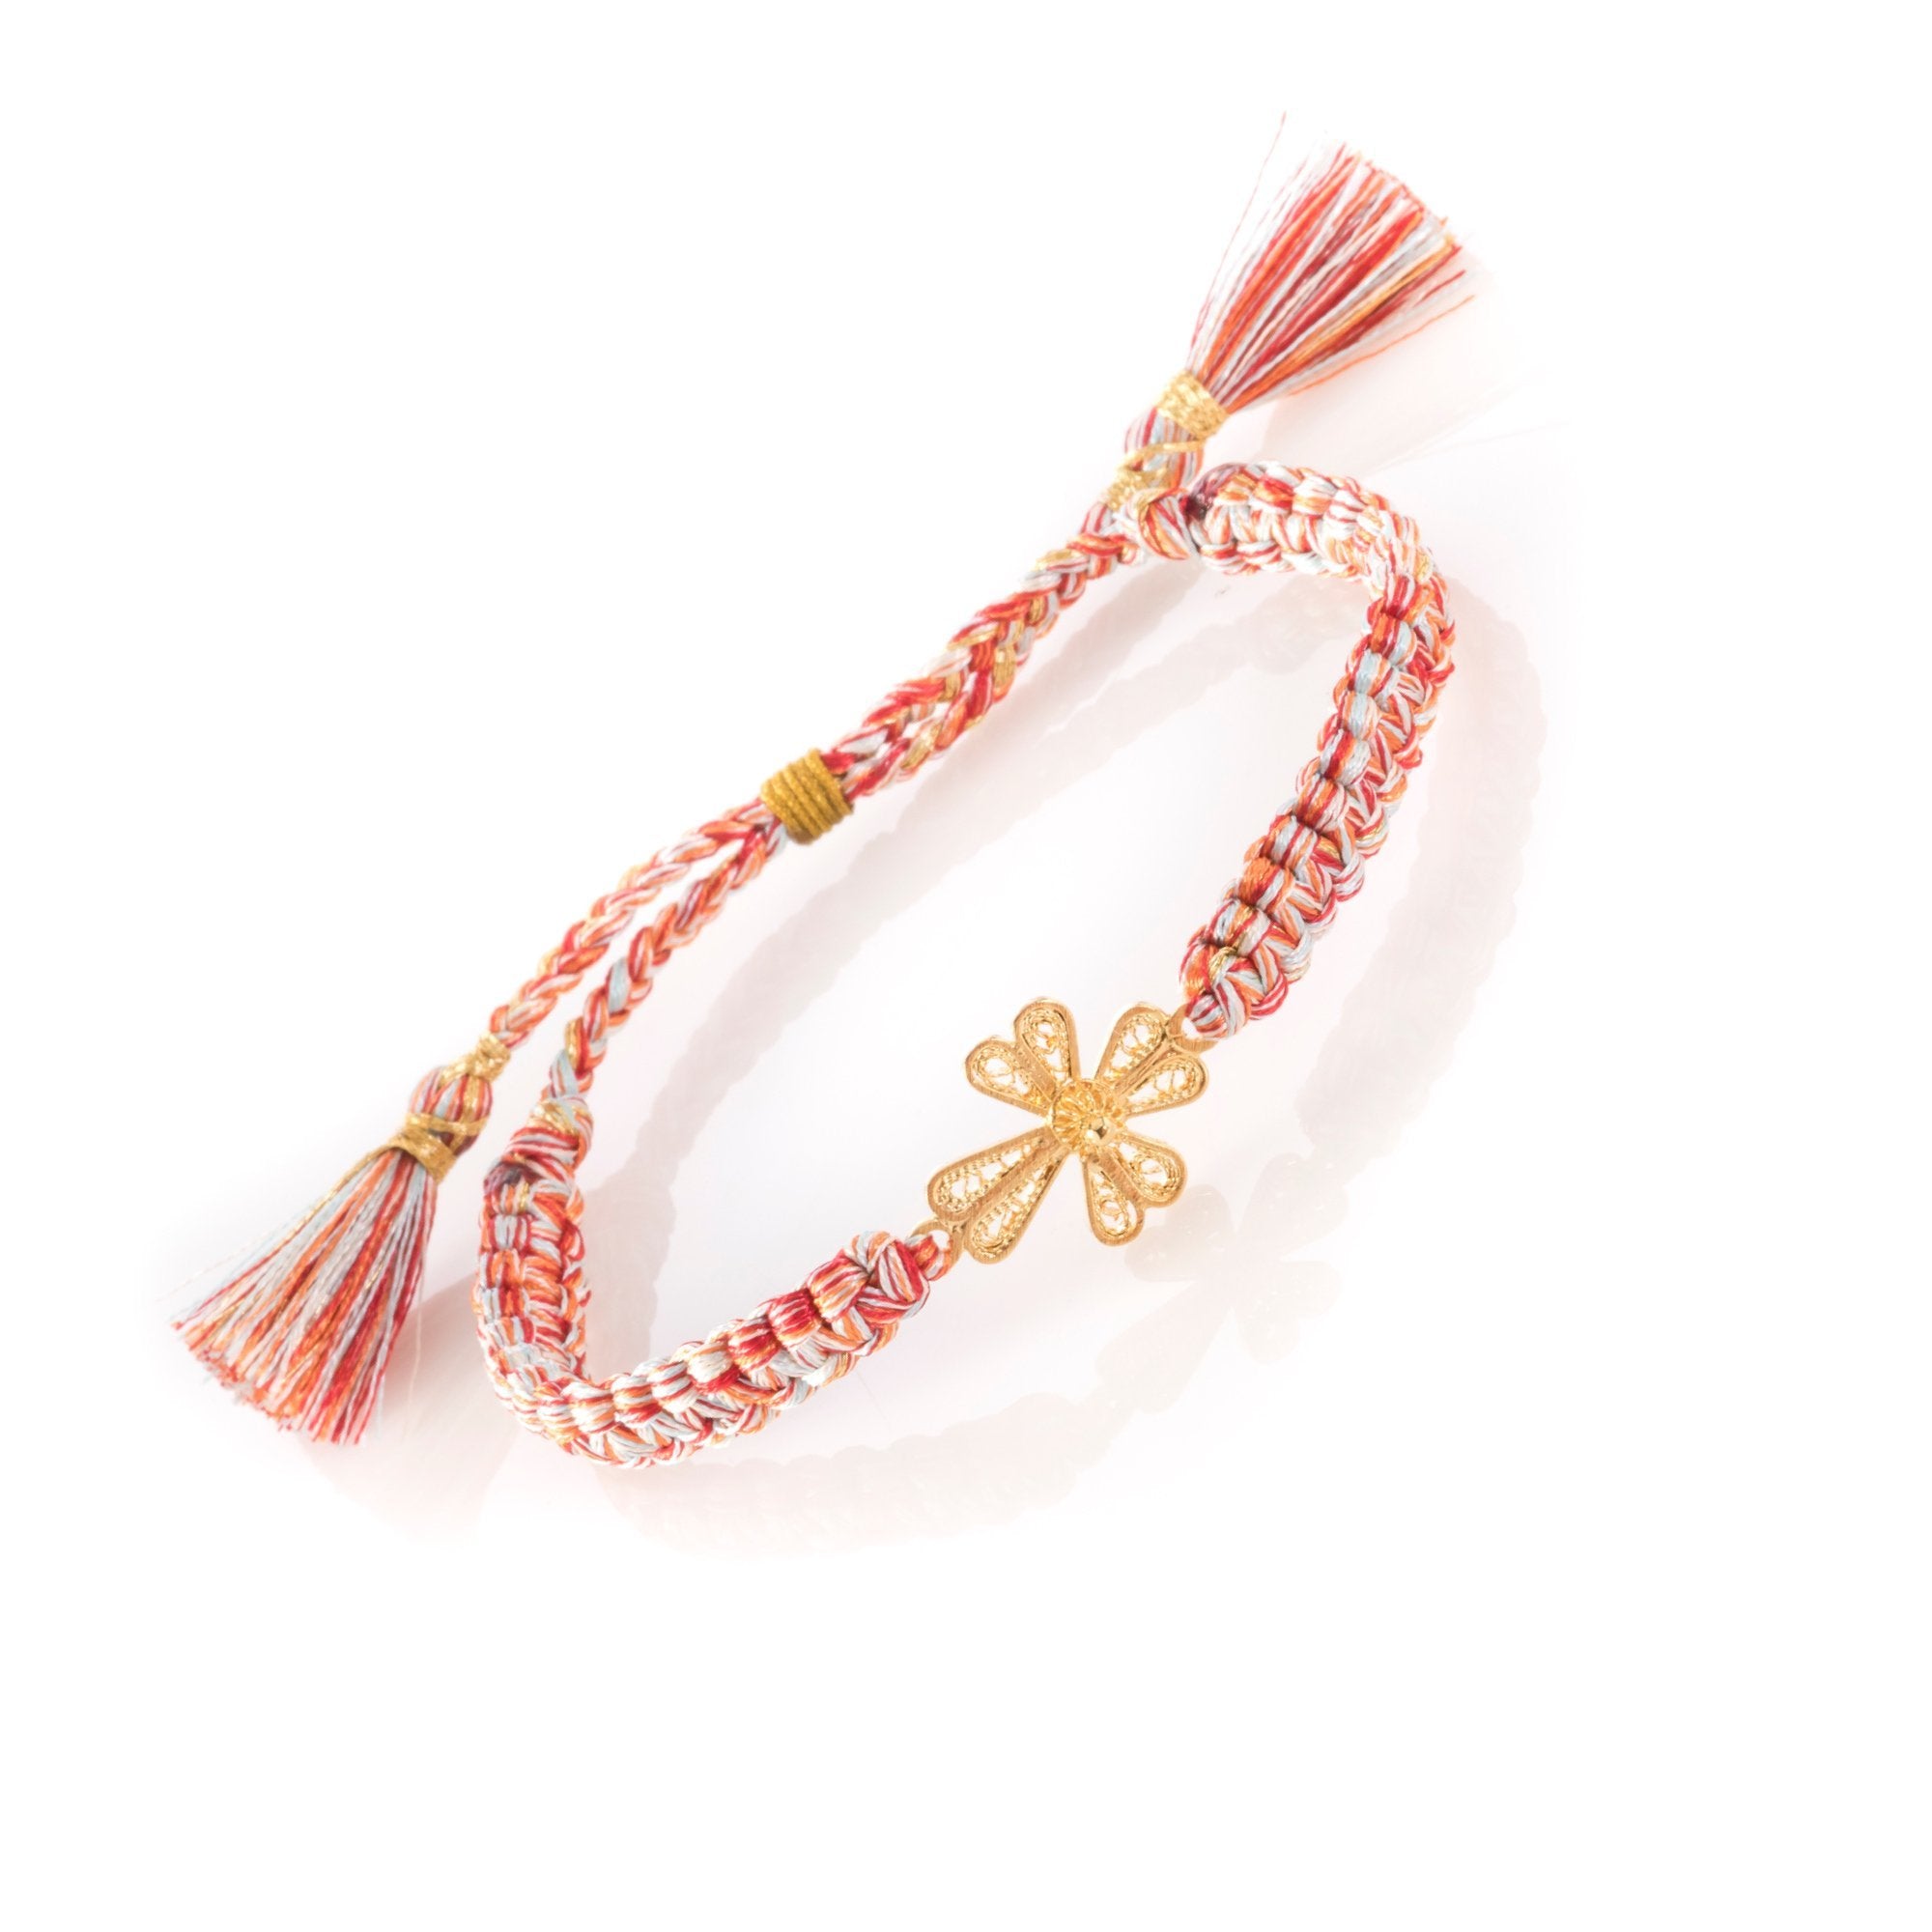 Adjustable Cross Filigree Gold Bracelet SkyBlue-Red-Orange